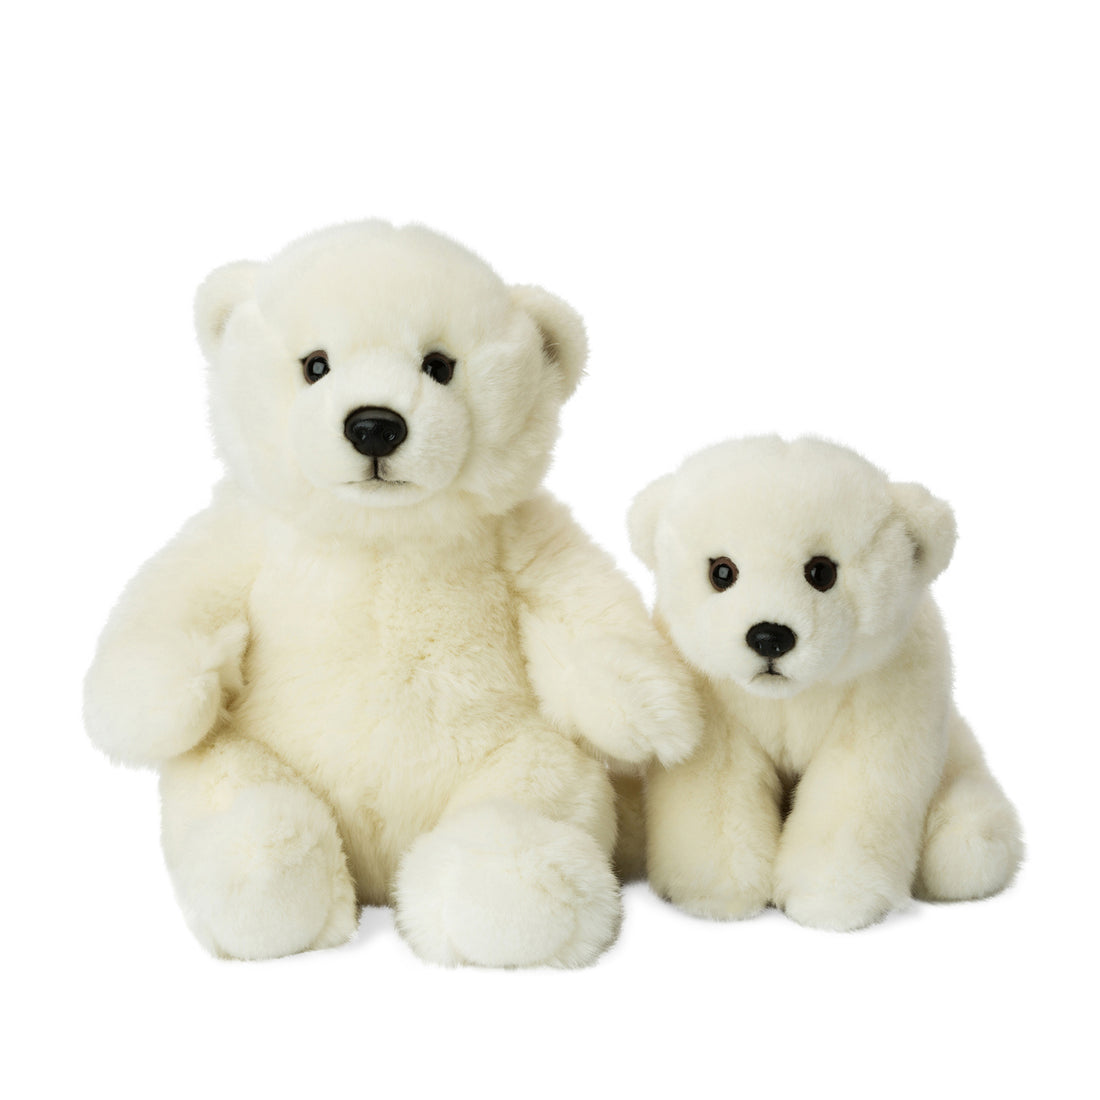 wwf-polar-bear-floppy-15cm-wwf-15187001- (5)